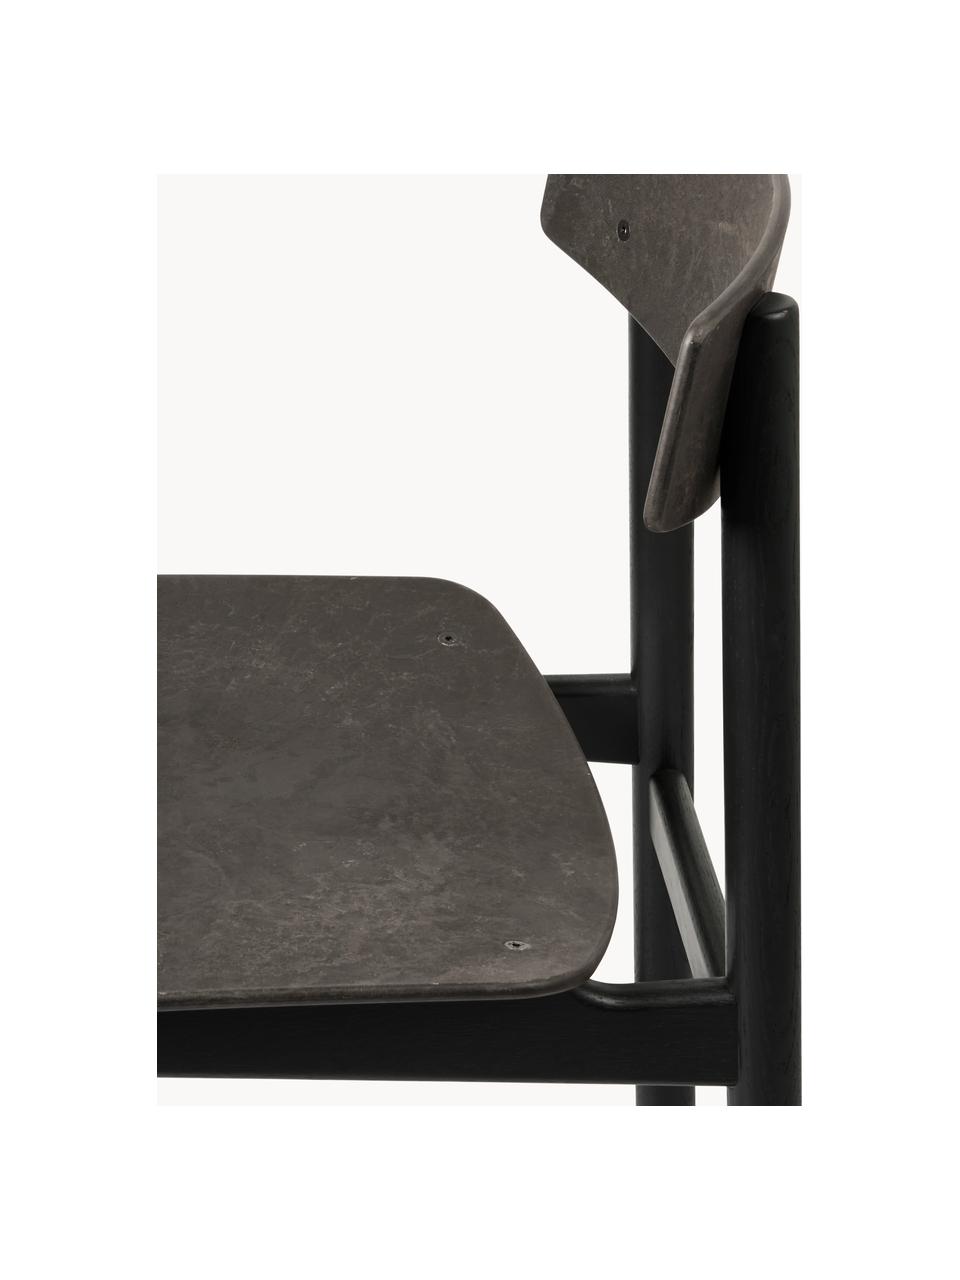 Drevená stolička Conscious, Antracitová, čierna, Š 47 x H 47 cm